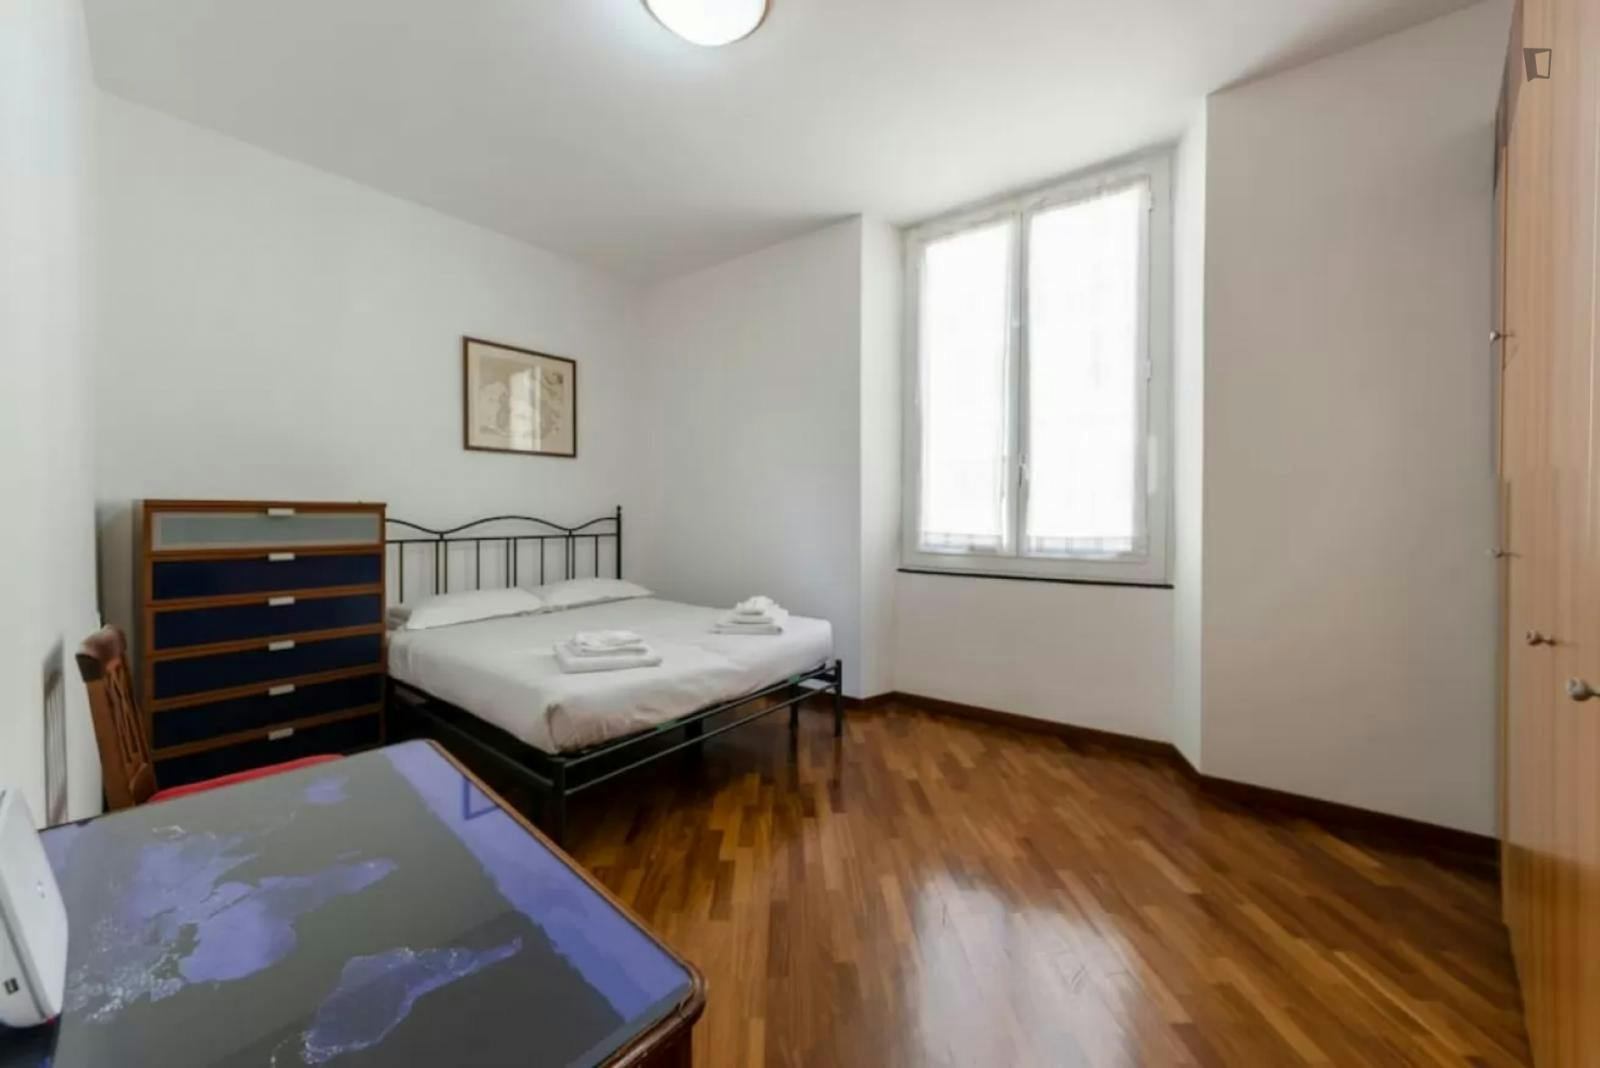 Welcoming 1-bedroom flat near the Università di Genova Economics Department